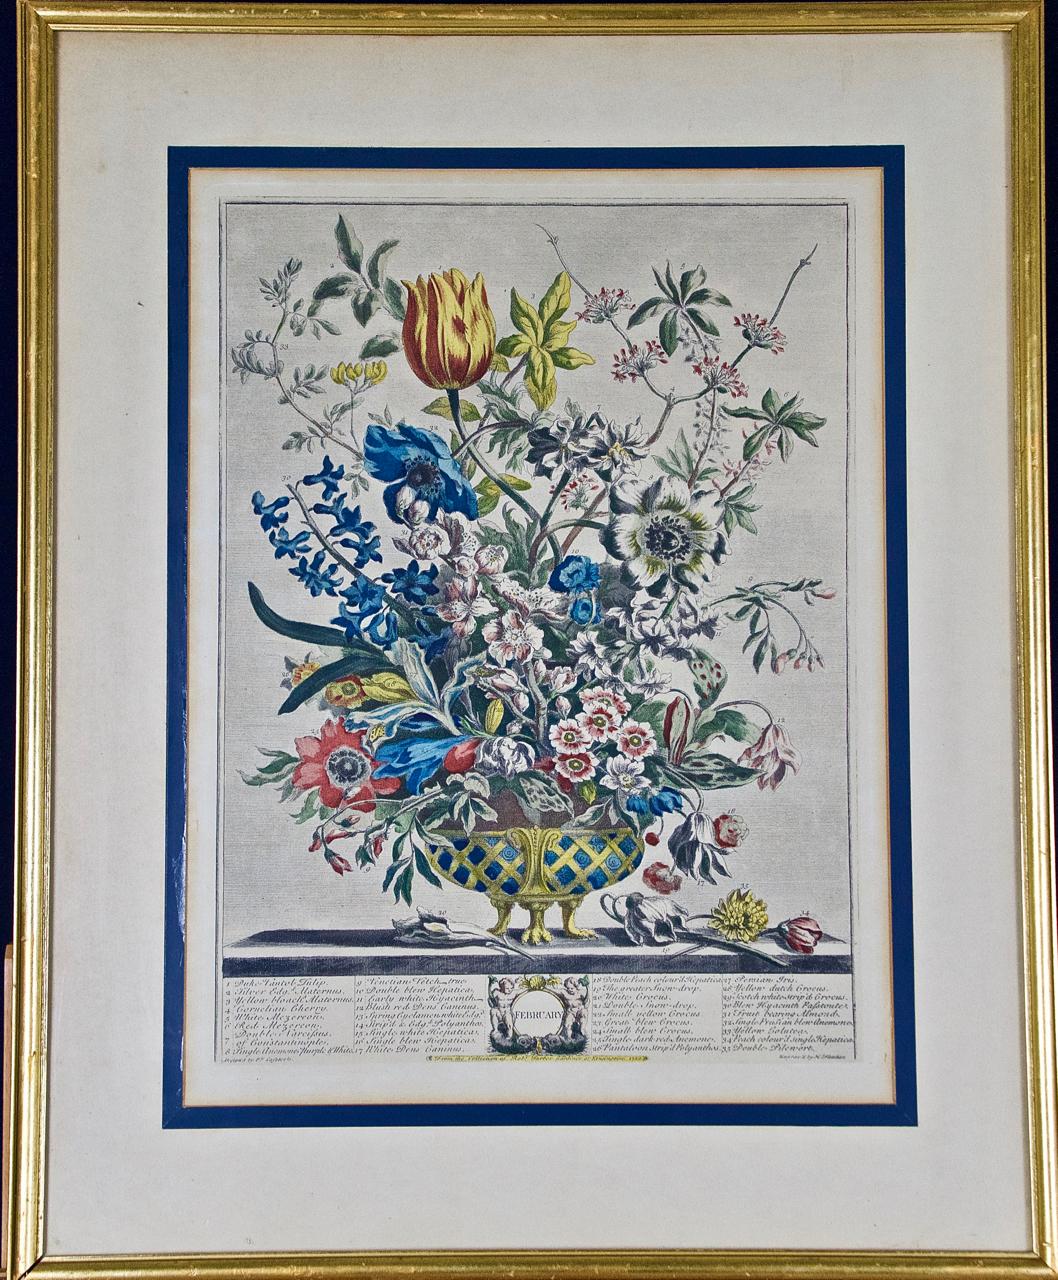 Cette gravure encadrée, coloriée à la main, intitulée "February Bouquet" est tirée de "The Twelve Months of Flowers" de Henry Furber, publié à Londres en 1730 par Robert Sayer et John King. Chacune des douze gravures du livre, coloriées à la main, a